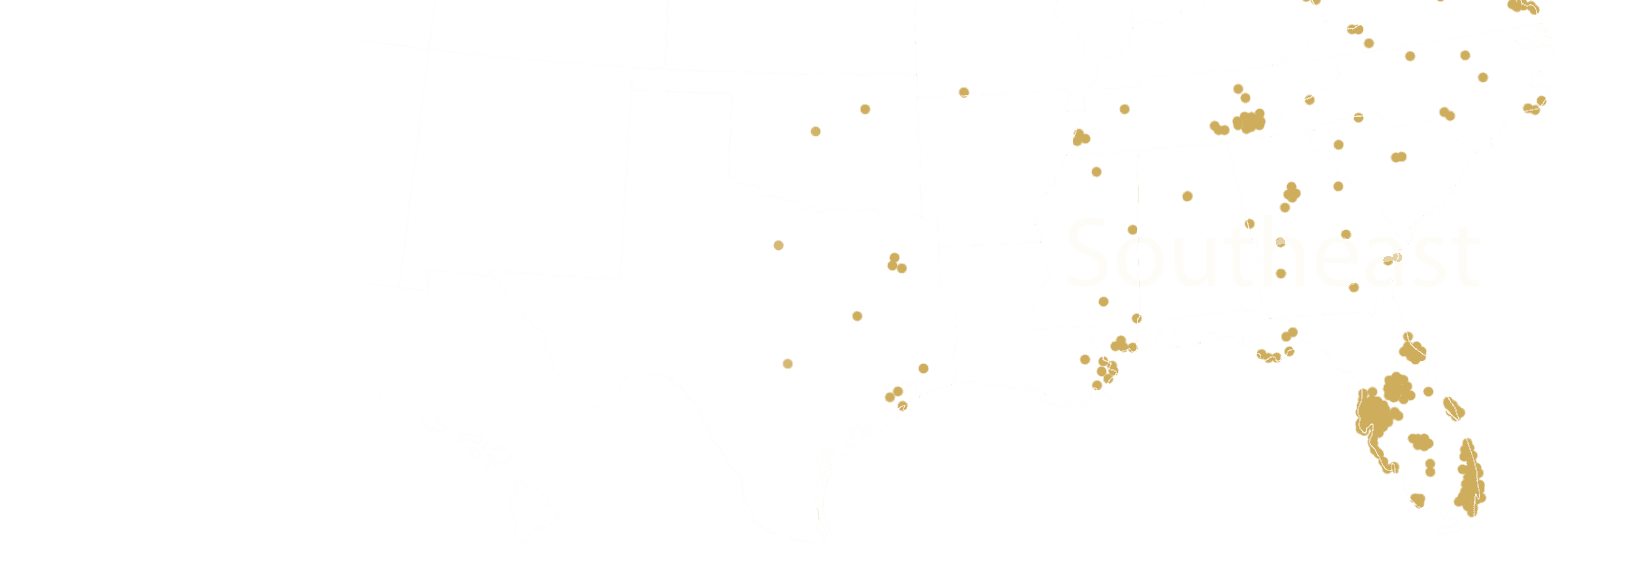 Southwest US Map